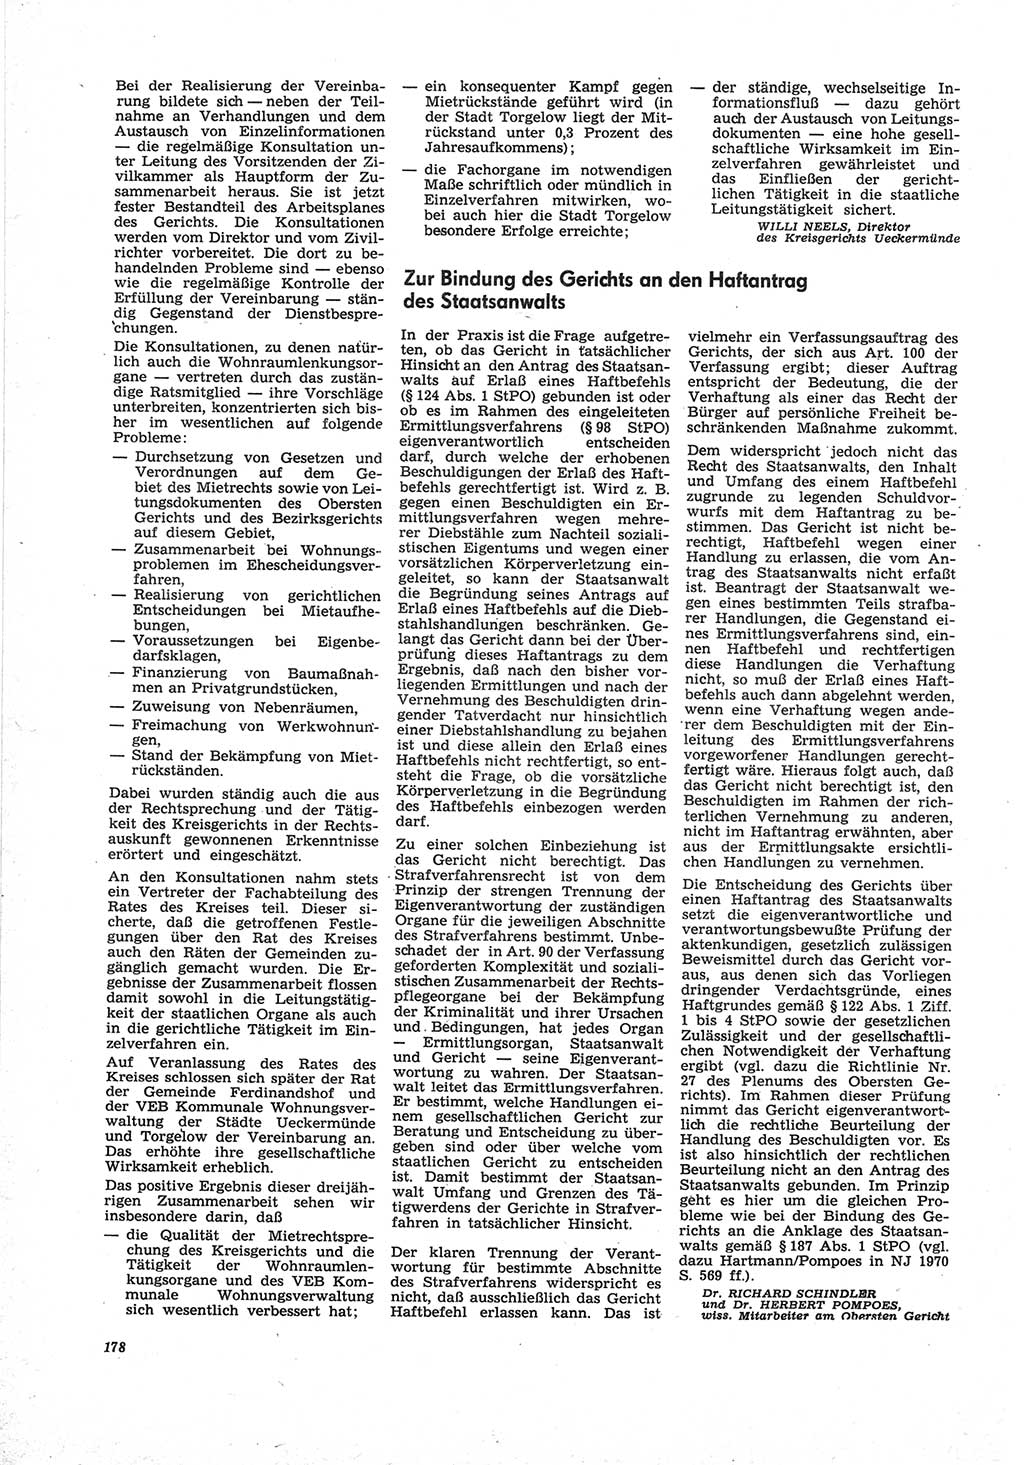 Neue Justiz (NJ), Zeitschrift für Recht und Rechtswissenschaft [Deutsche Demokratische Republik (DDR)], 25. Jahrgang 1971, Seite 178 (NJ DDR 1971, S. 178)